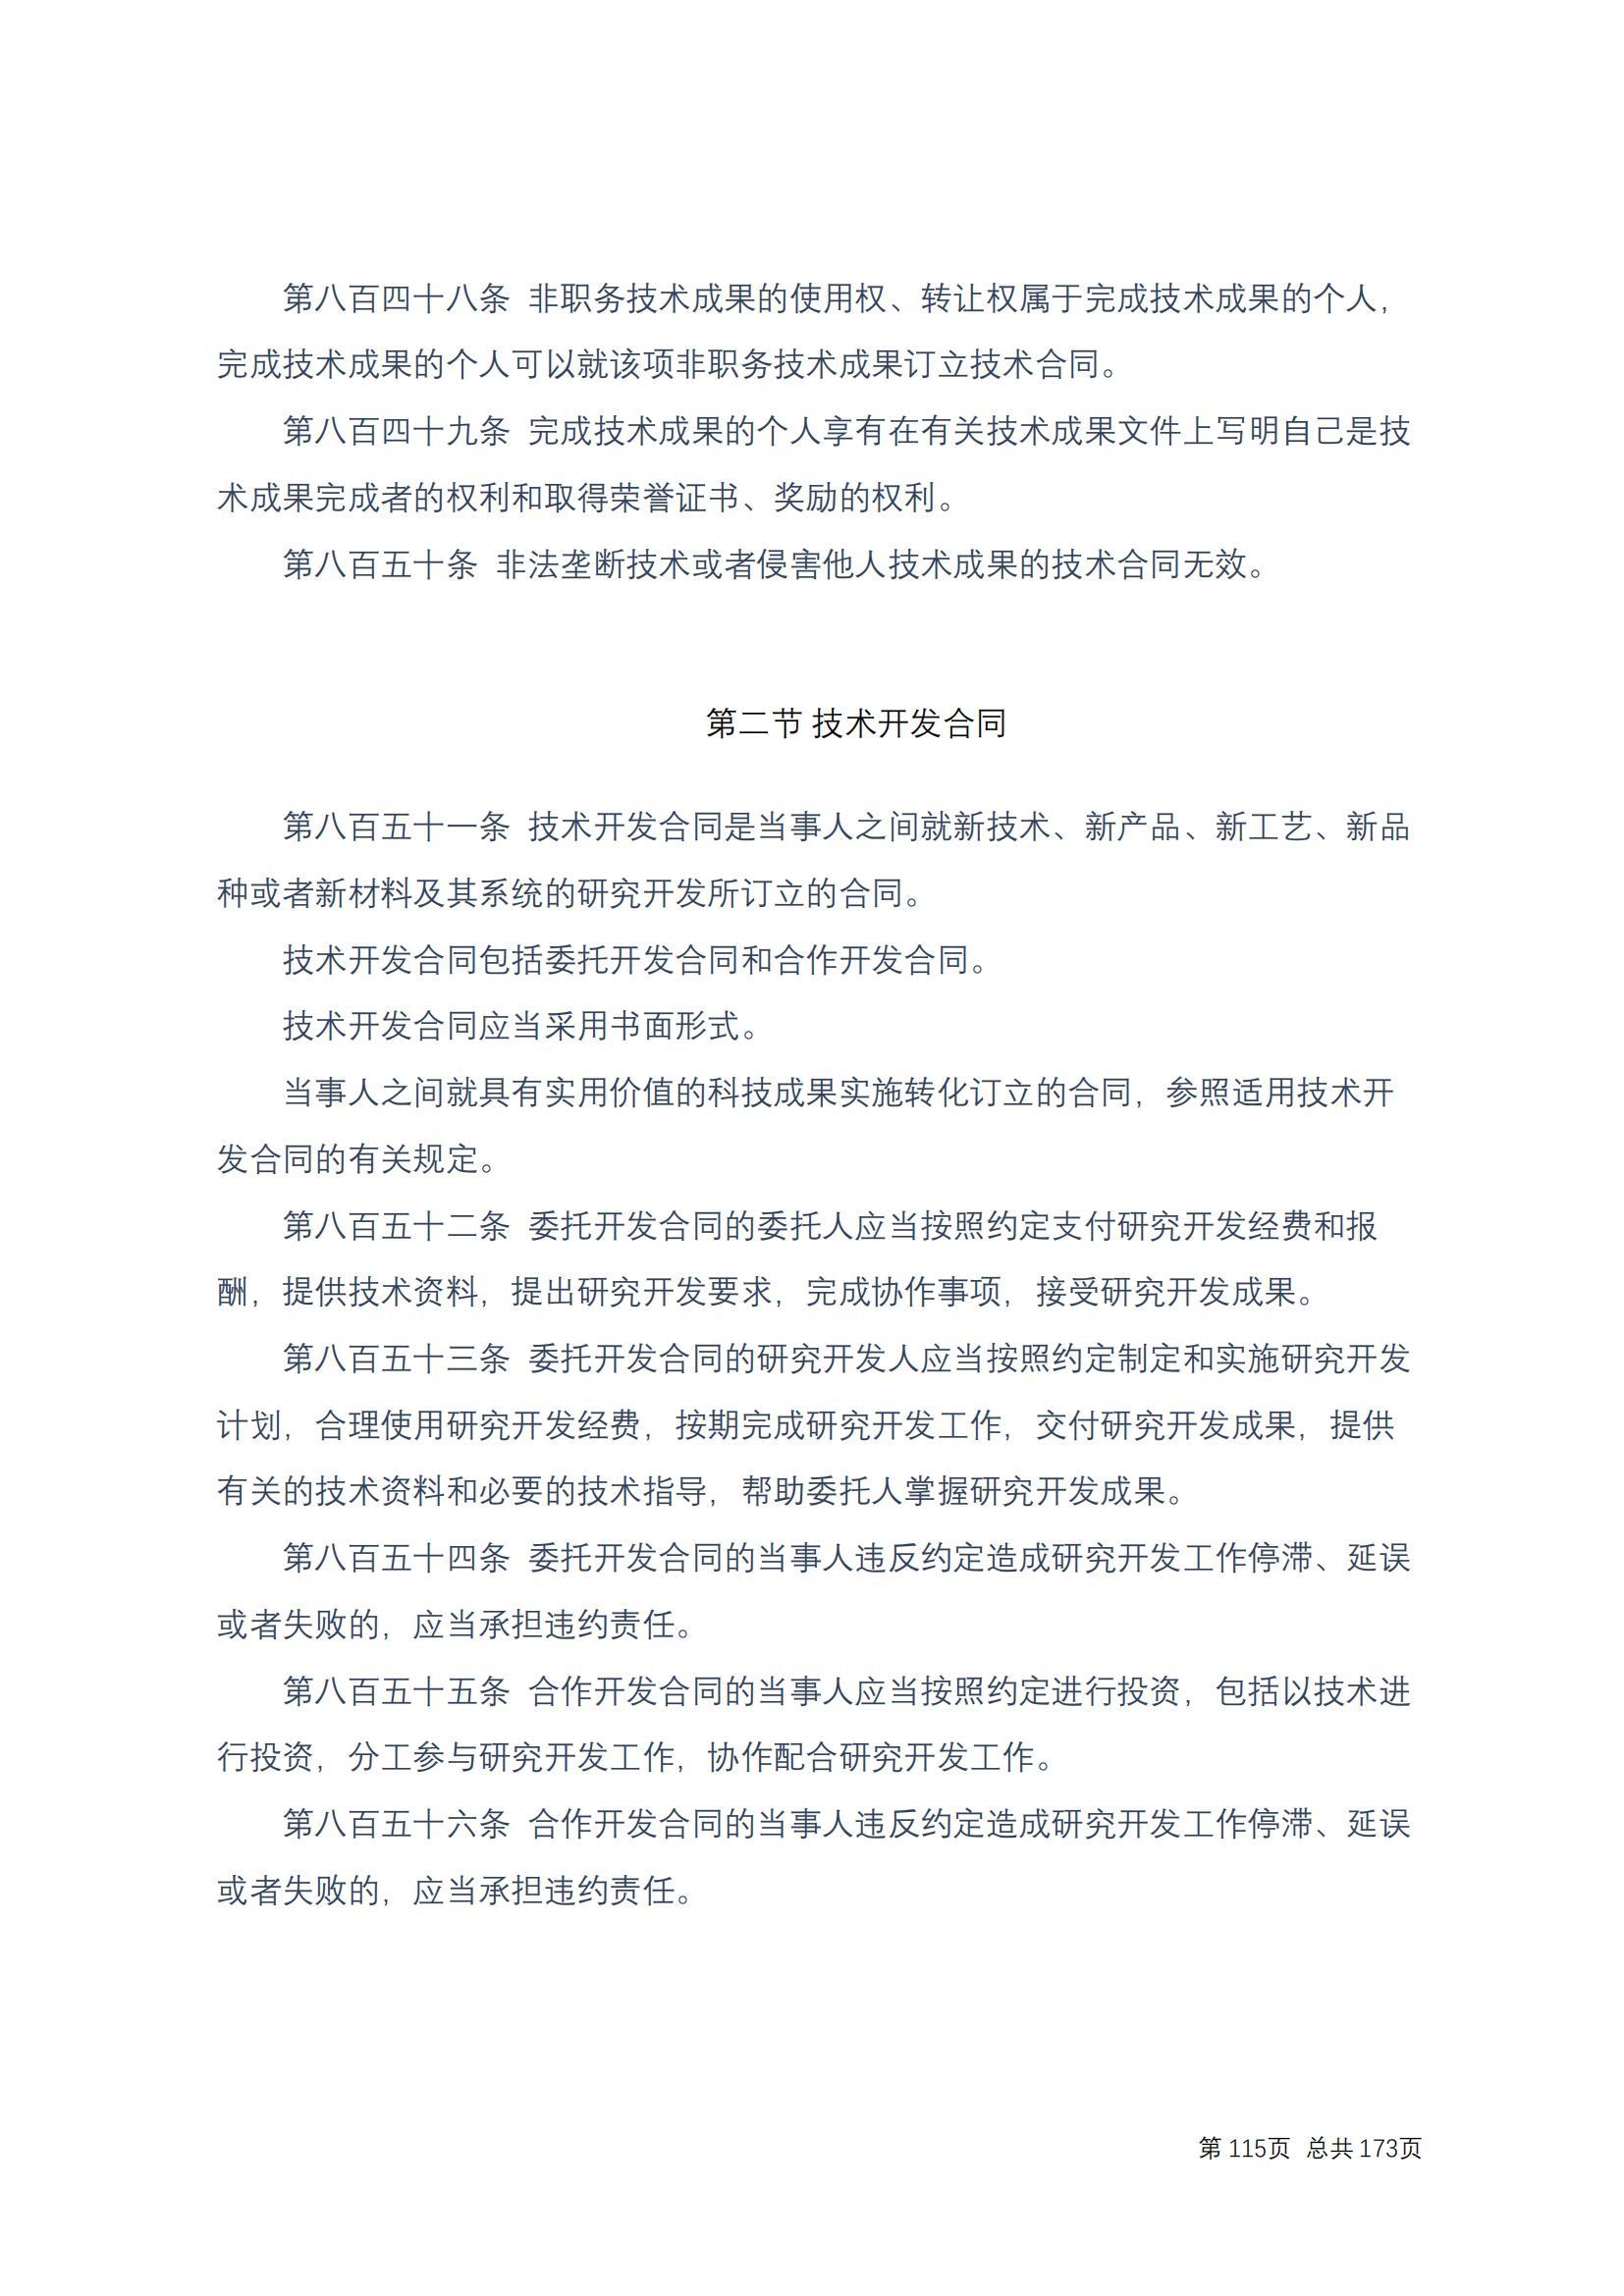 中华人民共和国民法典 修改过_114